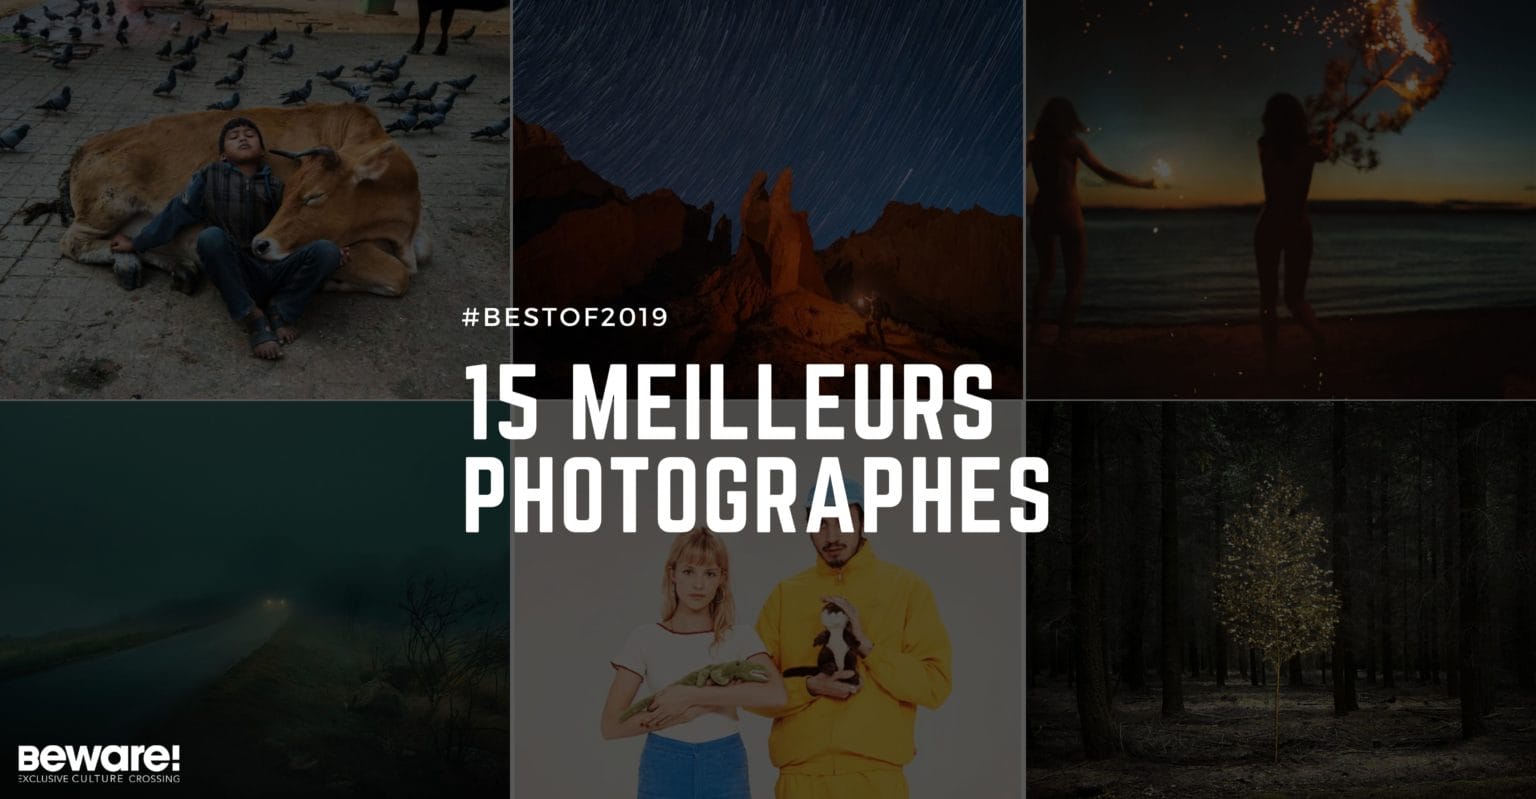 Meilleurs photographes de l'année 2019